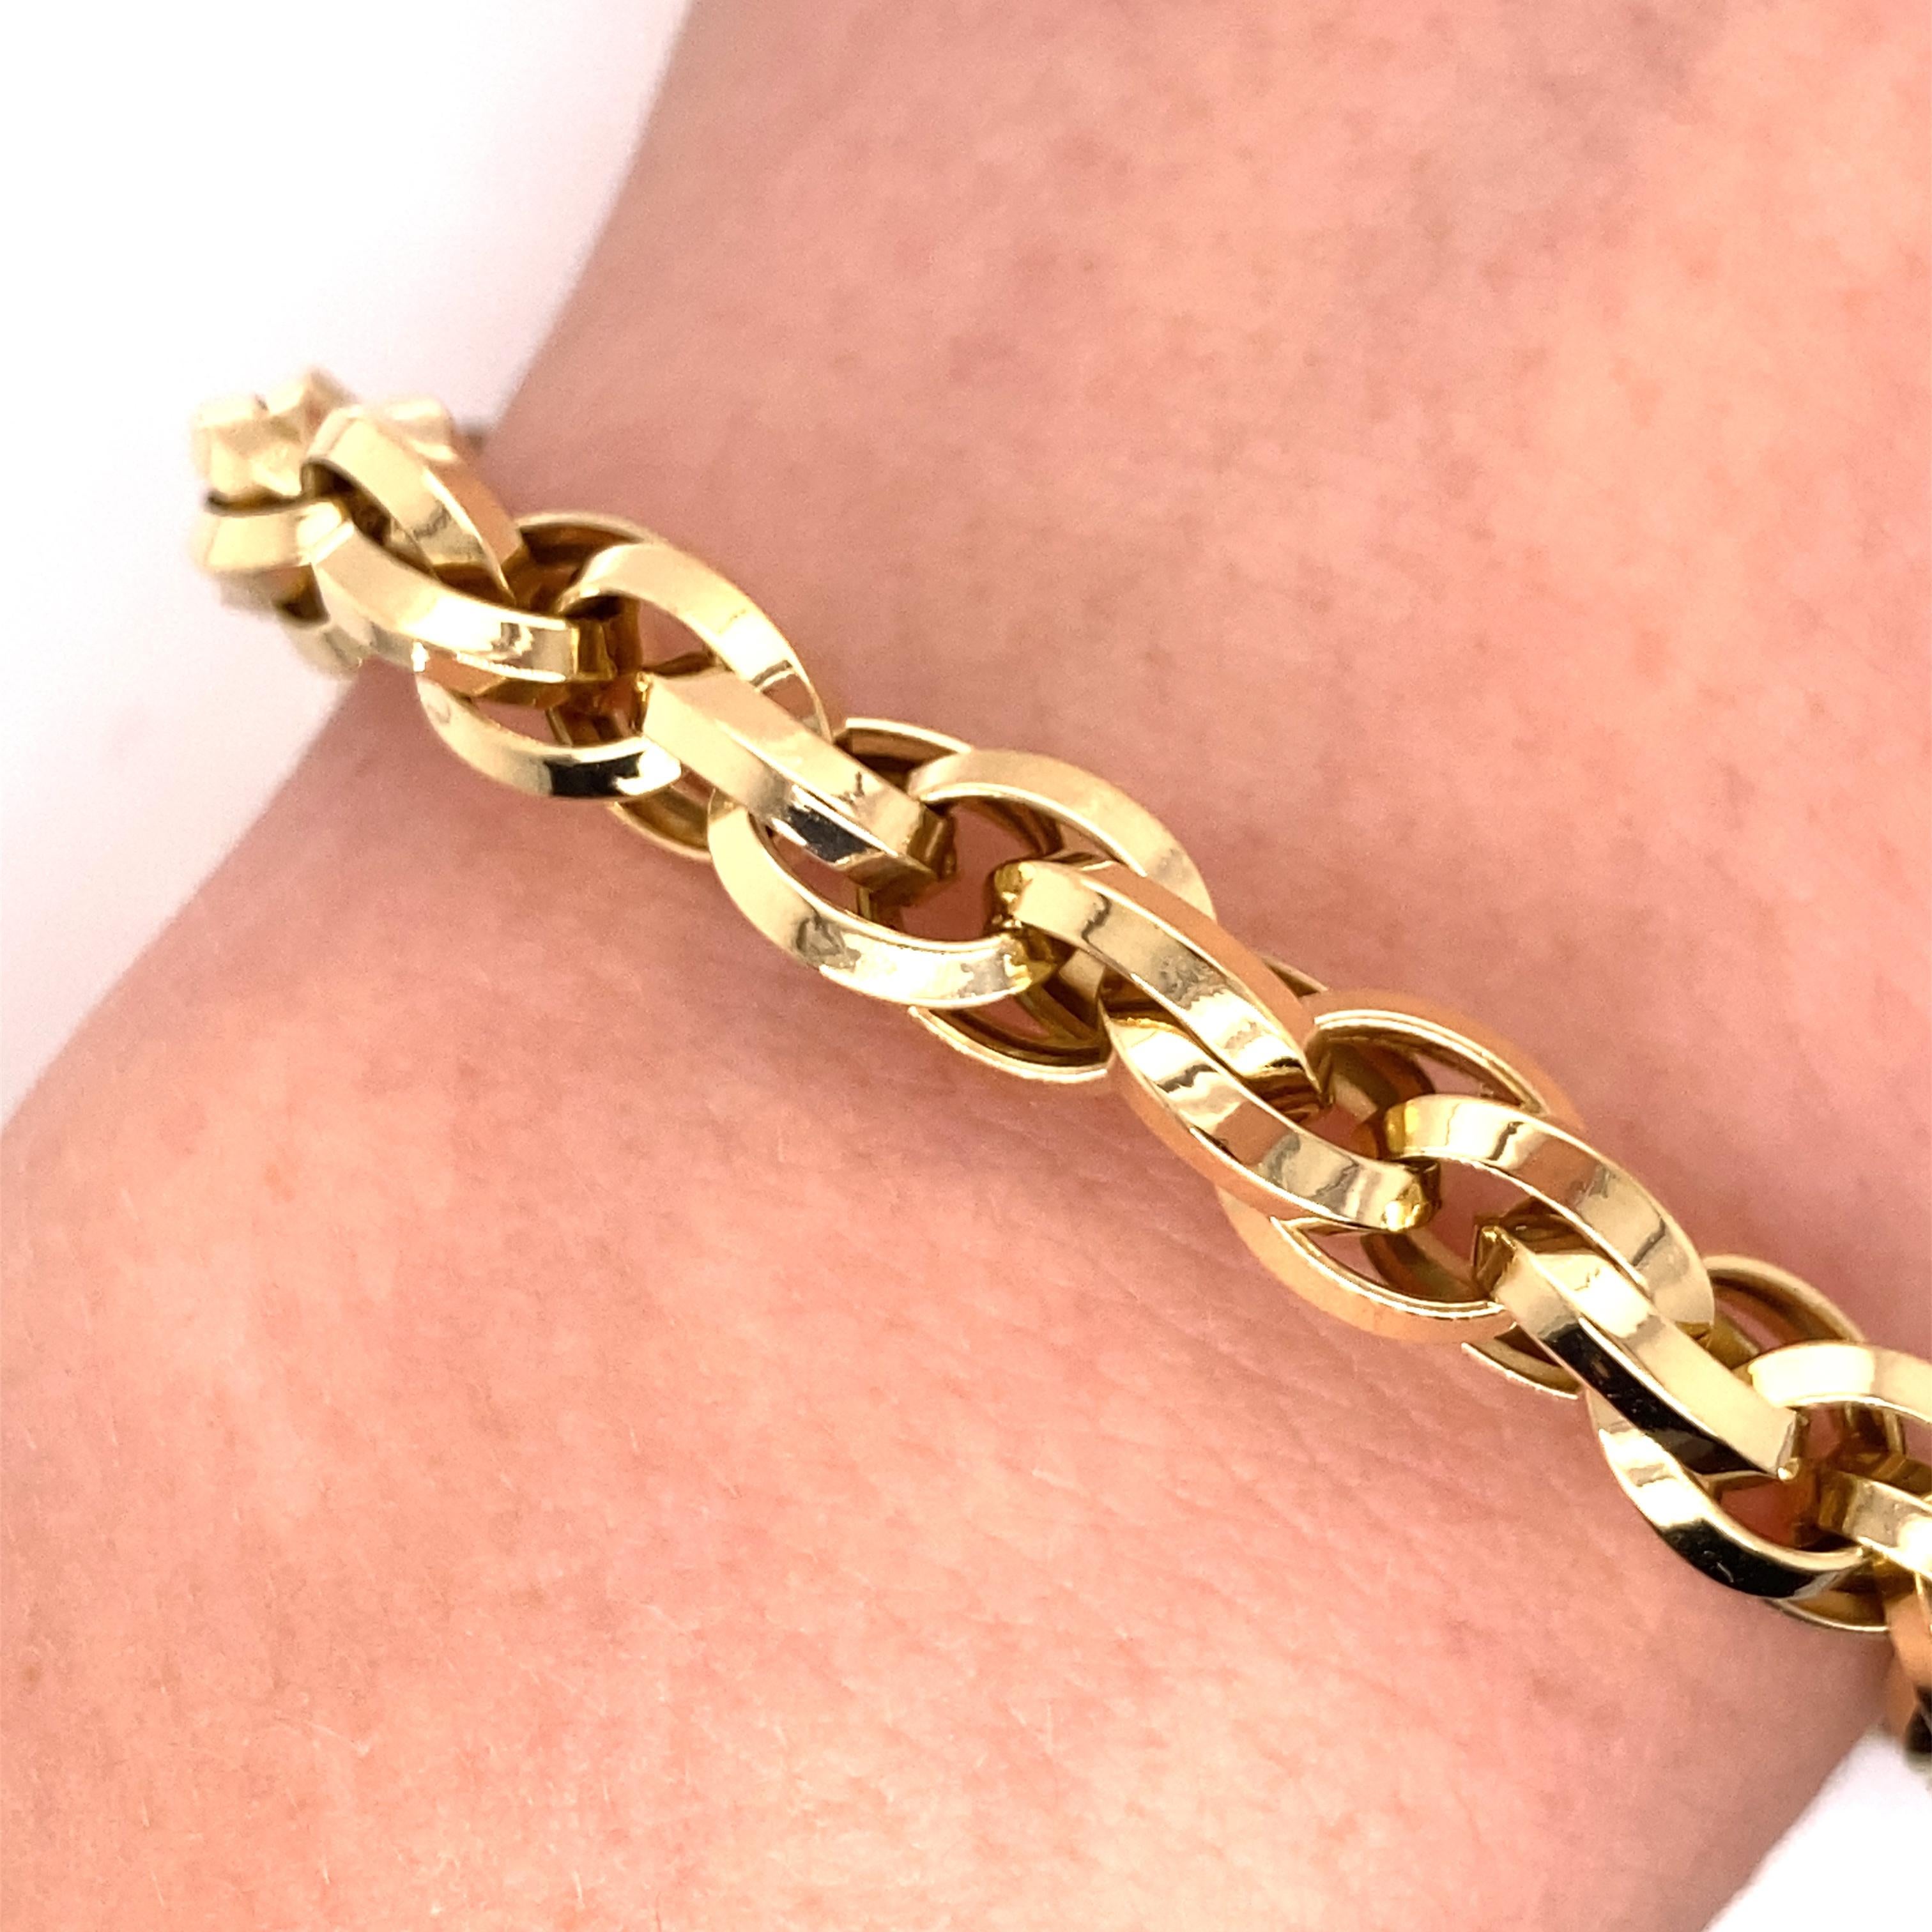 Vintage 2000's 18K Gelbgold Triple Cable Link Bracelet - Das Armband misst .25 Zoll breit und 7,25 Zoll lang und verfügt über einen Federring-Verschluss. Das Armband ist gestempelt 18K, und Italien. Der Armreif wiegt 12,27 Gramm Gold. 